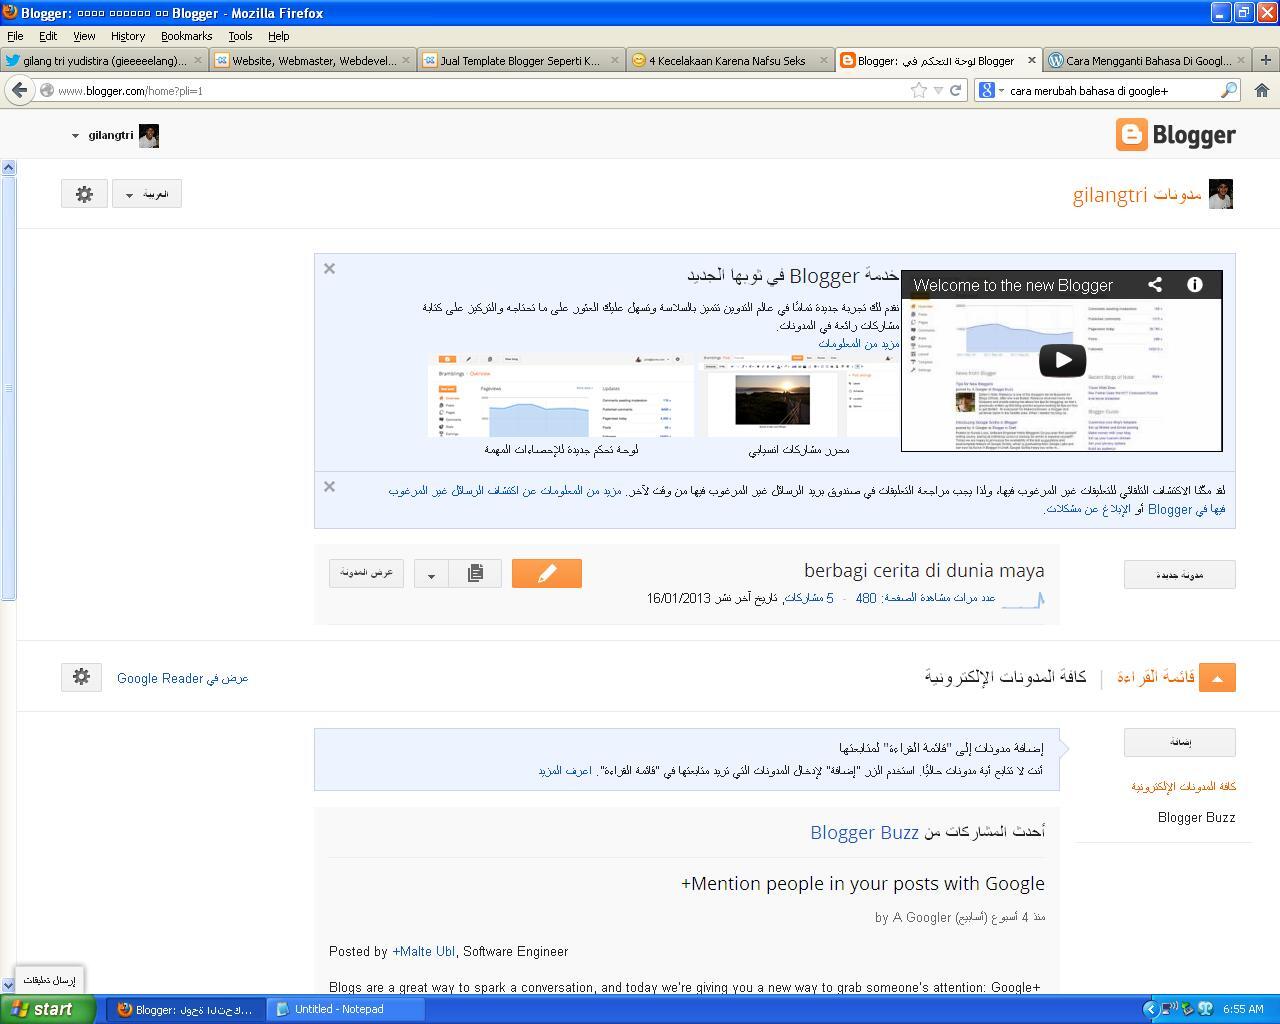 (help me)akun blogger tiba tiba berubah jadi bahasa arab